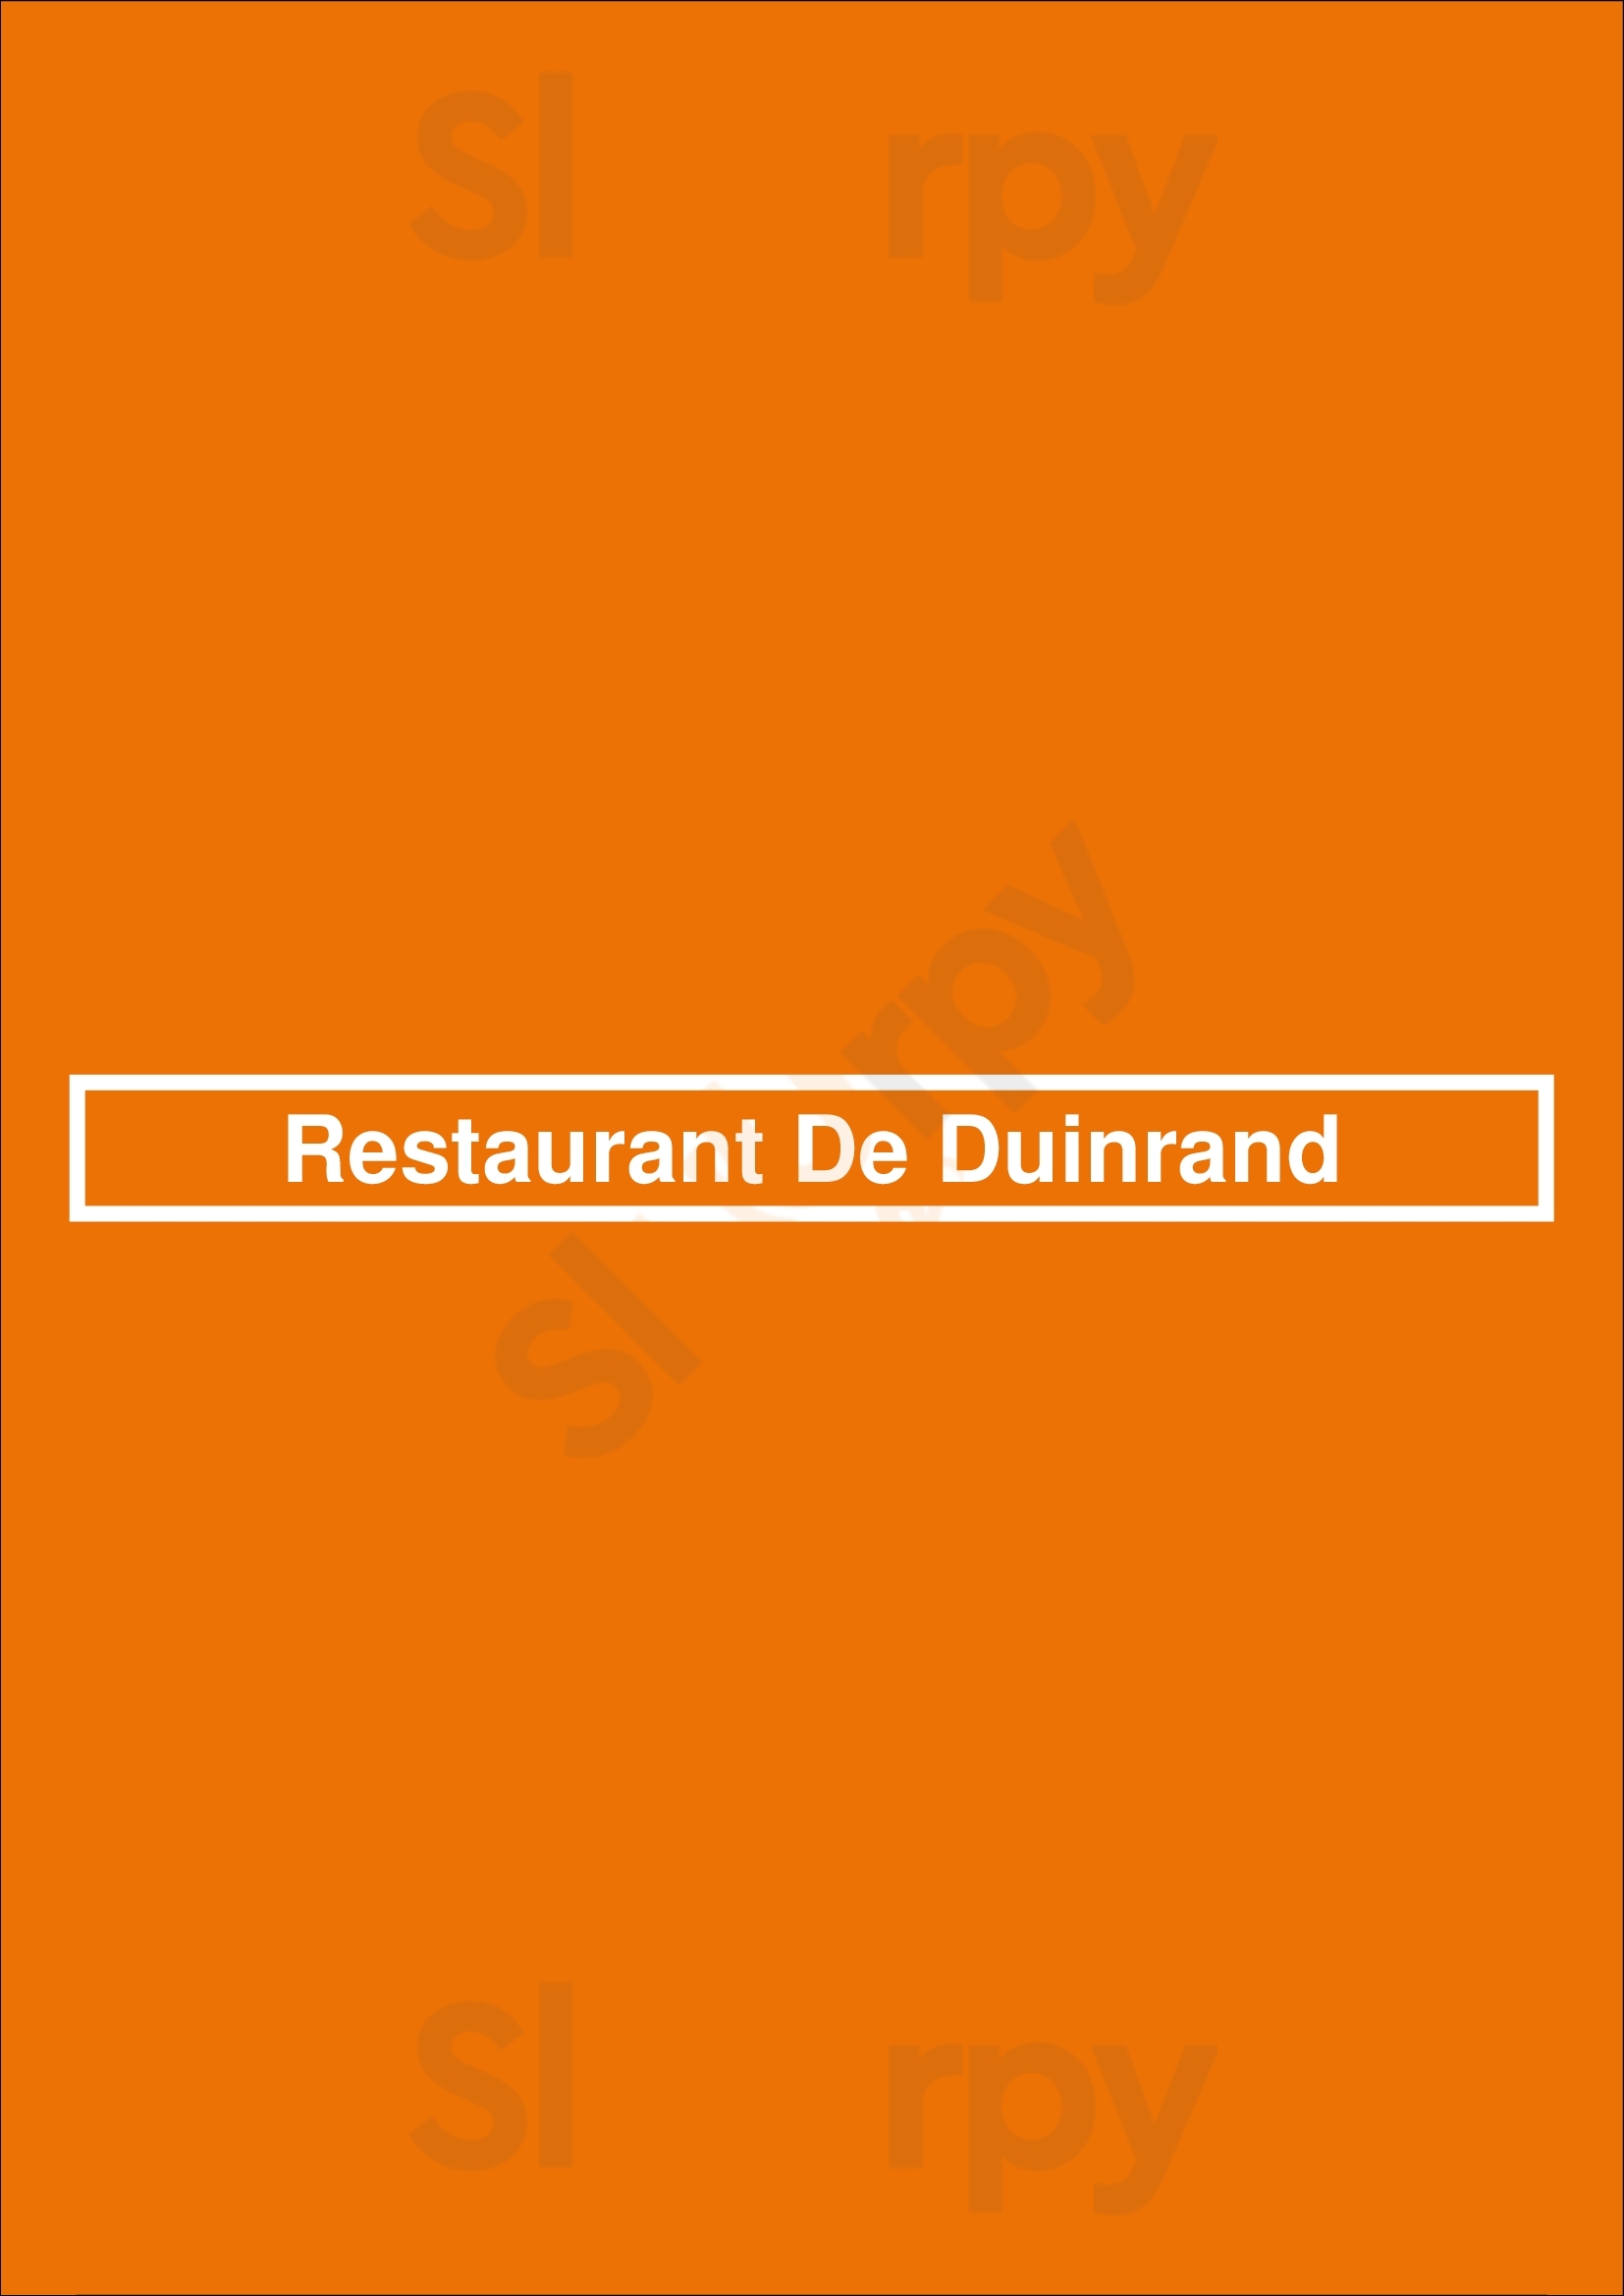 Restaurant De Duinrand Noordwijk Menu - 1